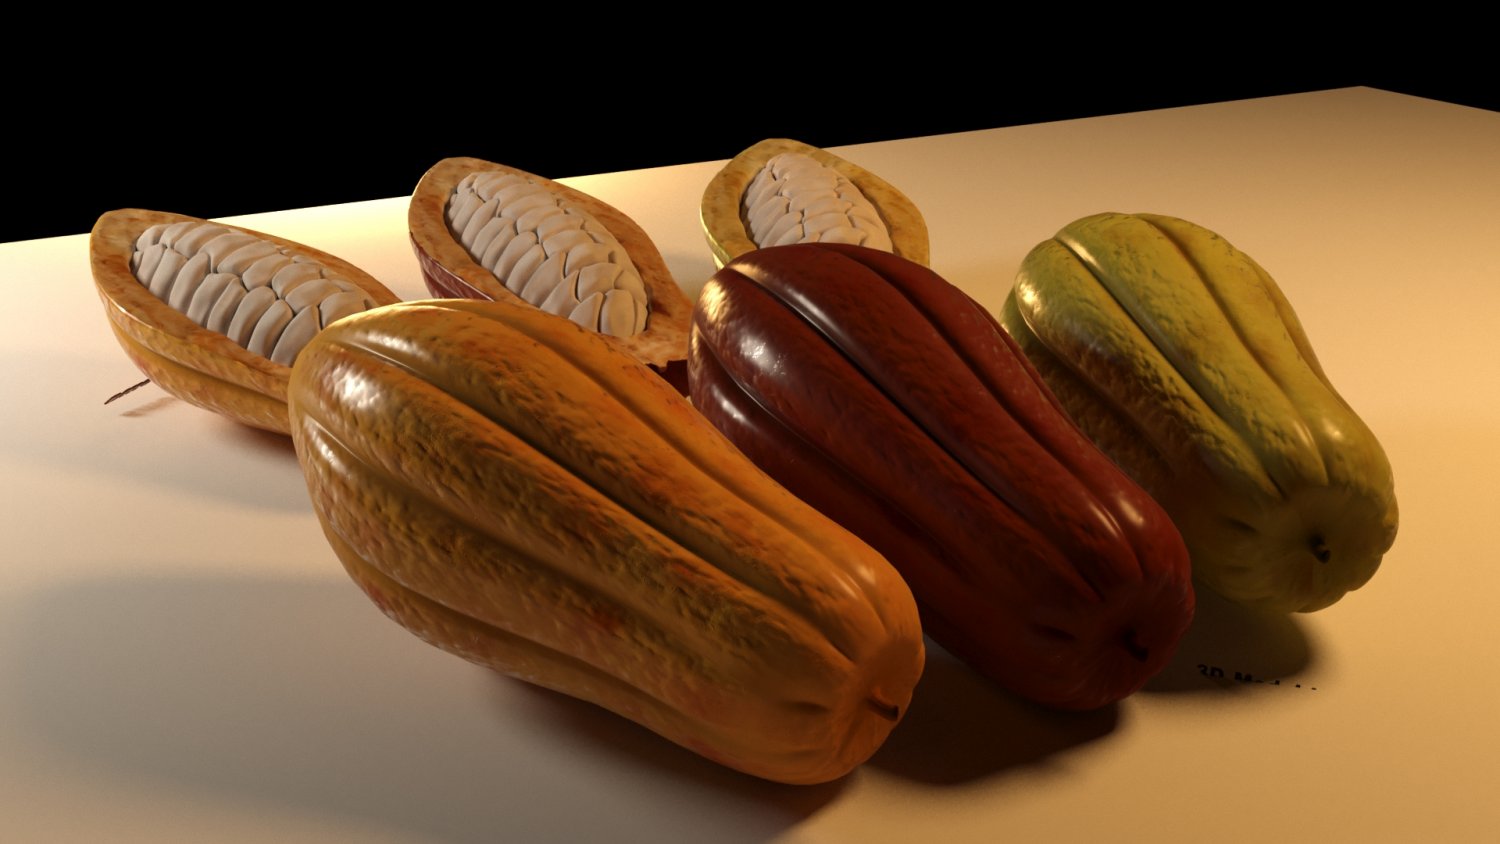 Cacao : 1 146 964 images, photos de stock, objets 3D et images vectorielles